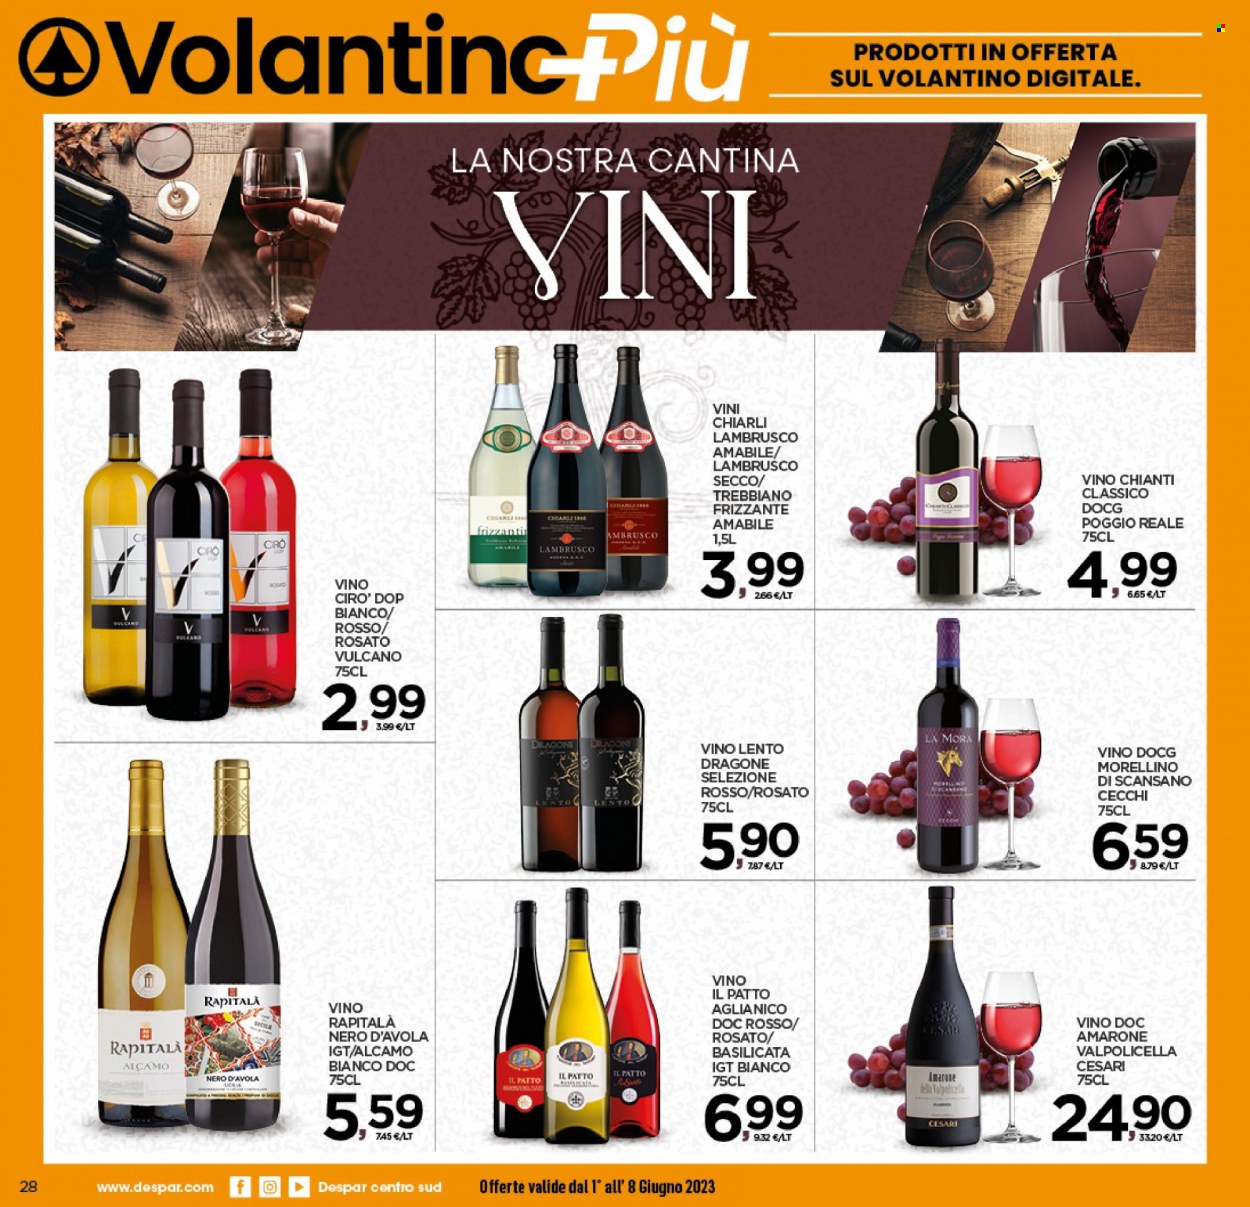 thumbnail - Volantino Interspar - 1/6/2023 - 8/6/2023 - Prodotti in offerta - vino bianco, vino rosso, Valpolicella, Chianti, Nero d'Avola, Lambrusco, vino, Morellino, Trebbiano. Pagina 28.